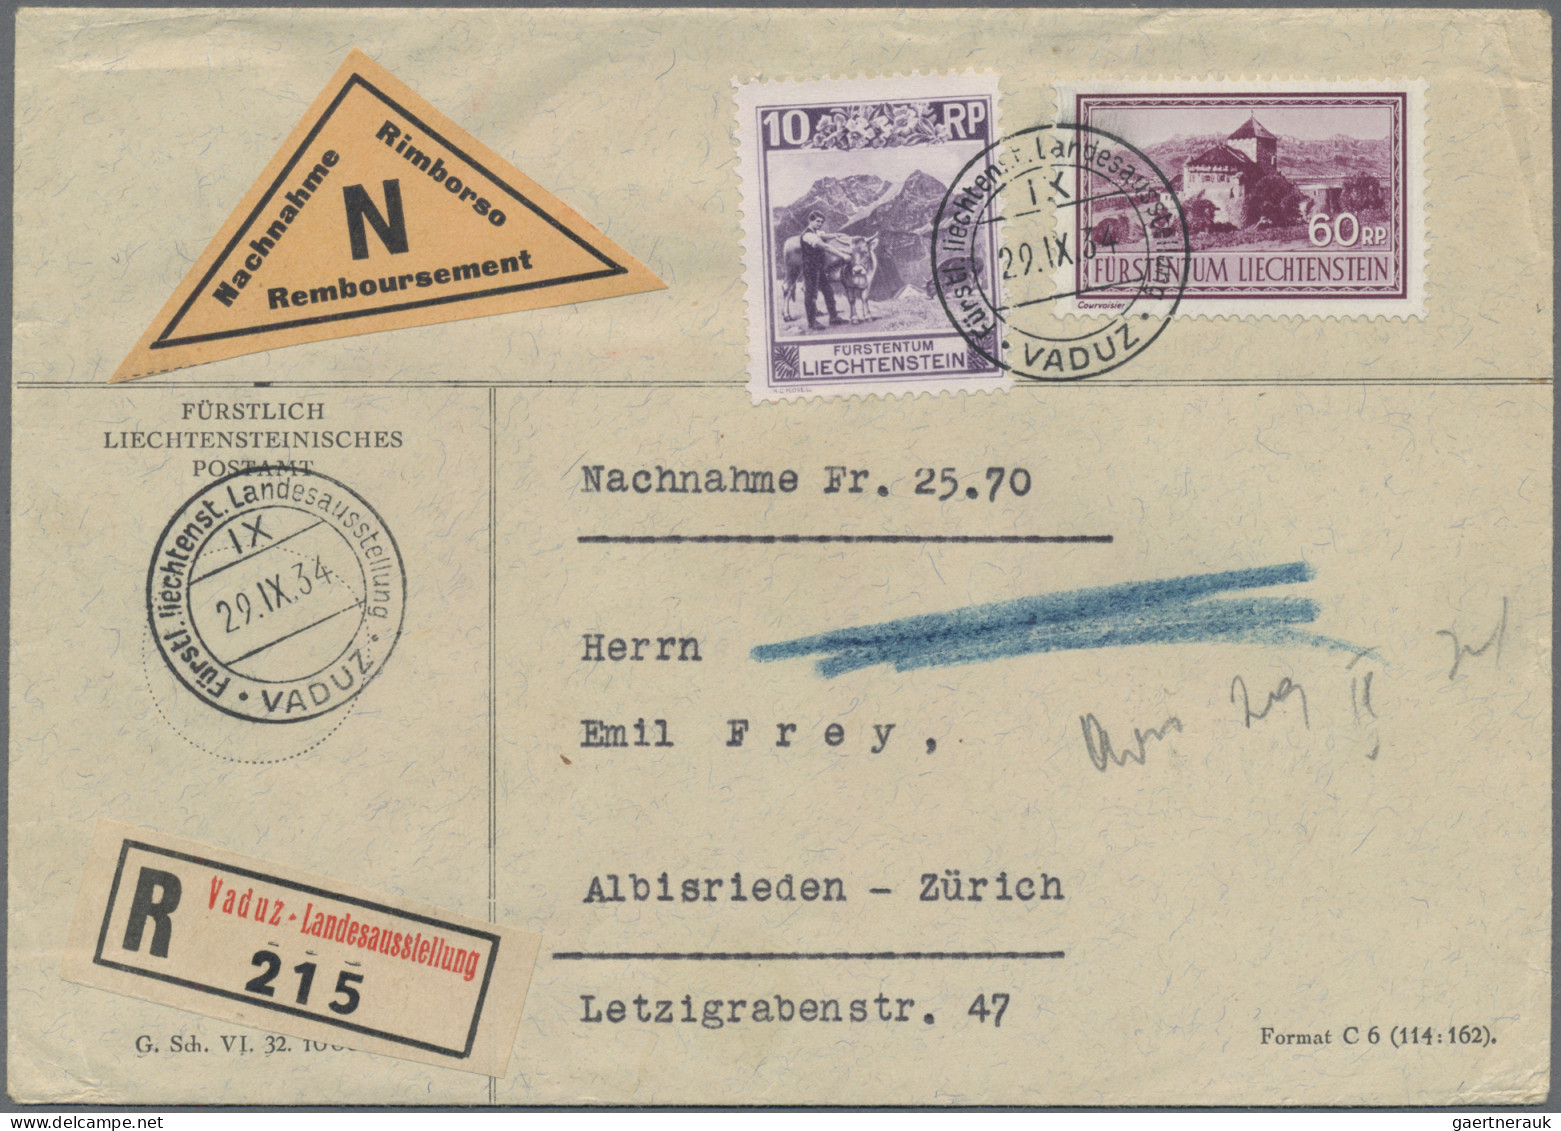 Liechtenstein: 1866/1980, umfangreiche Sammlung von ca. 720 Briefen und Karten a